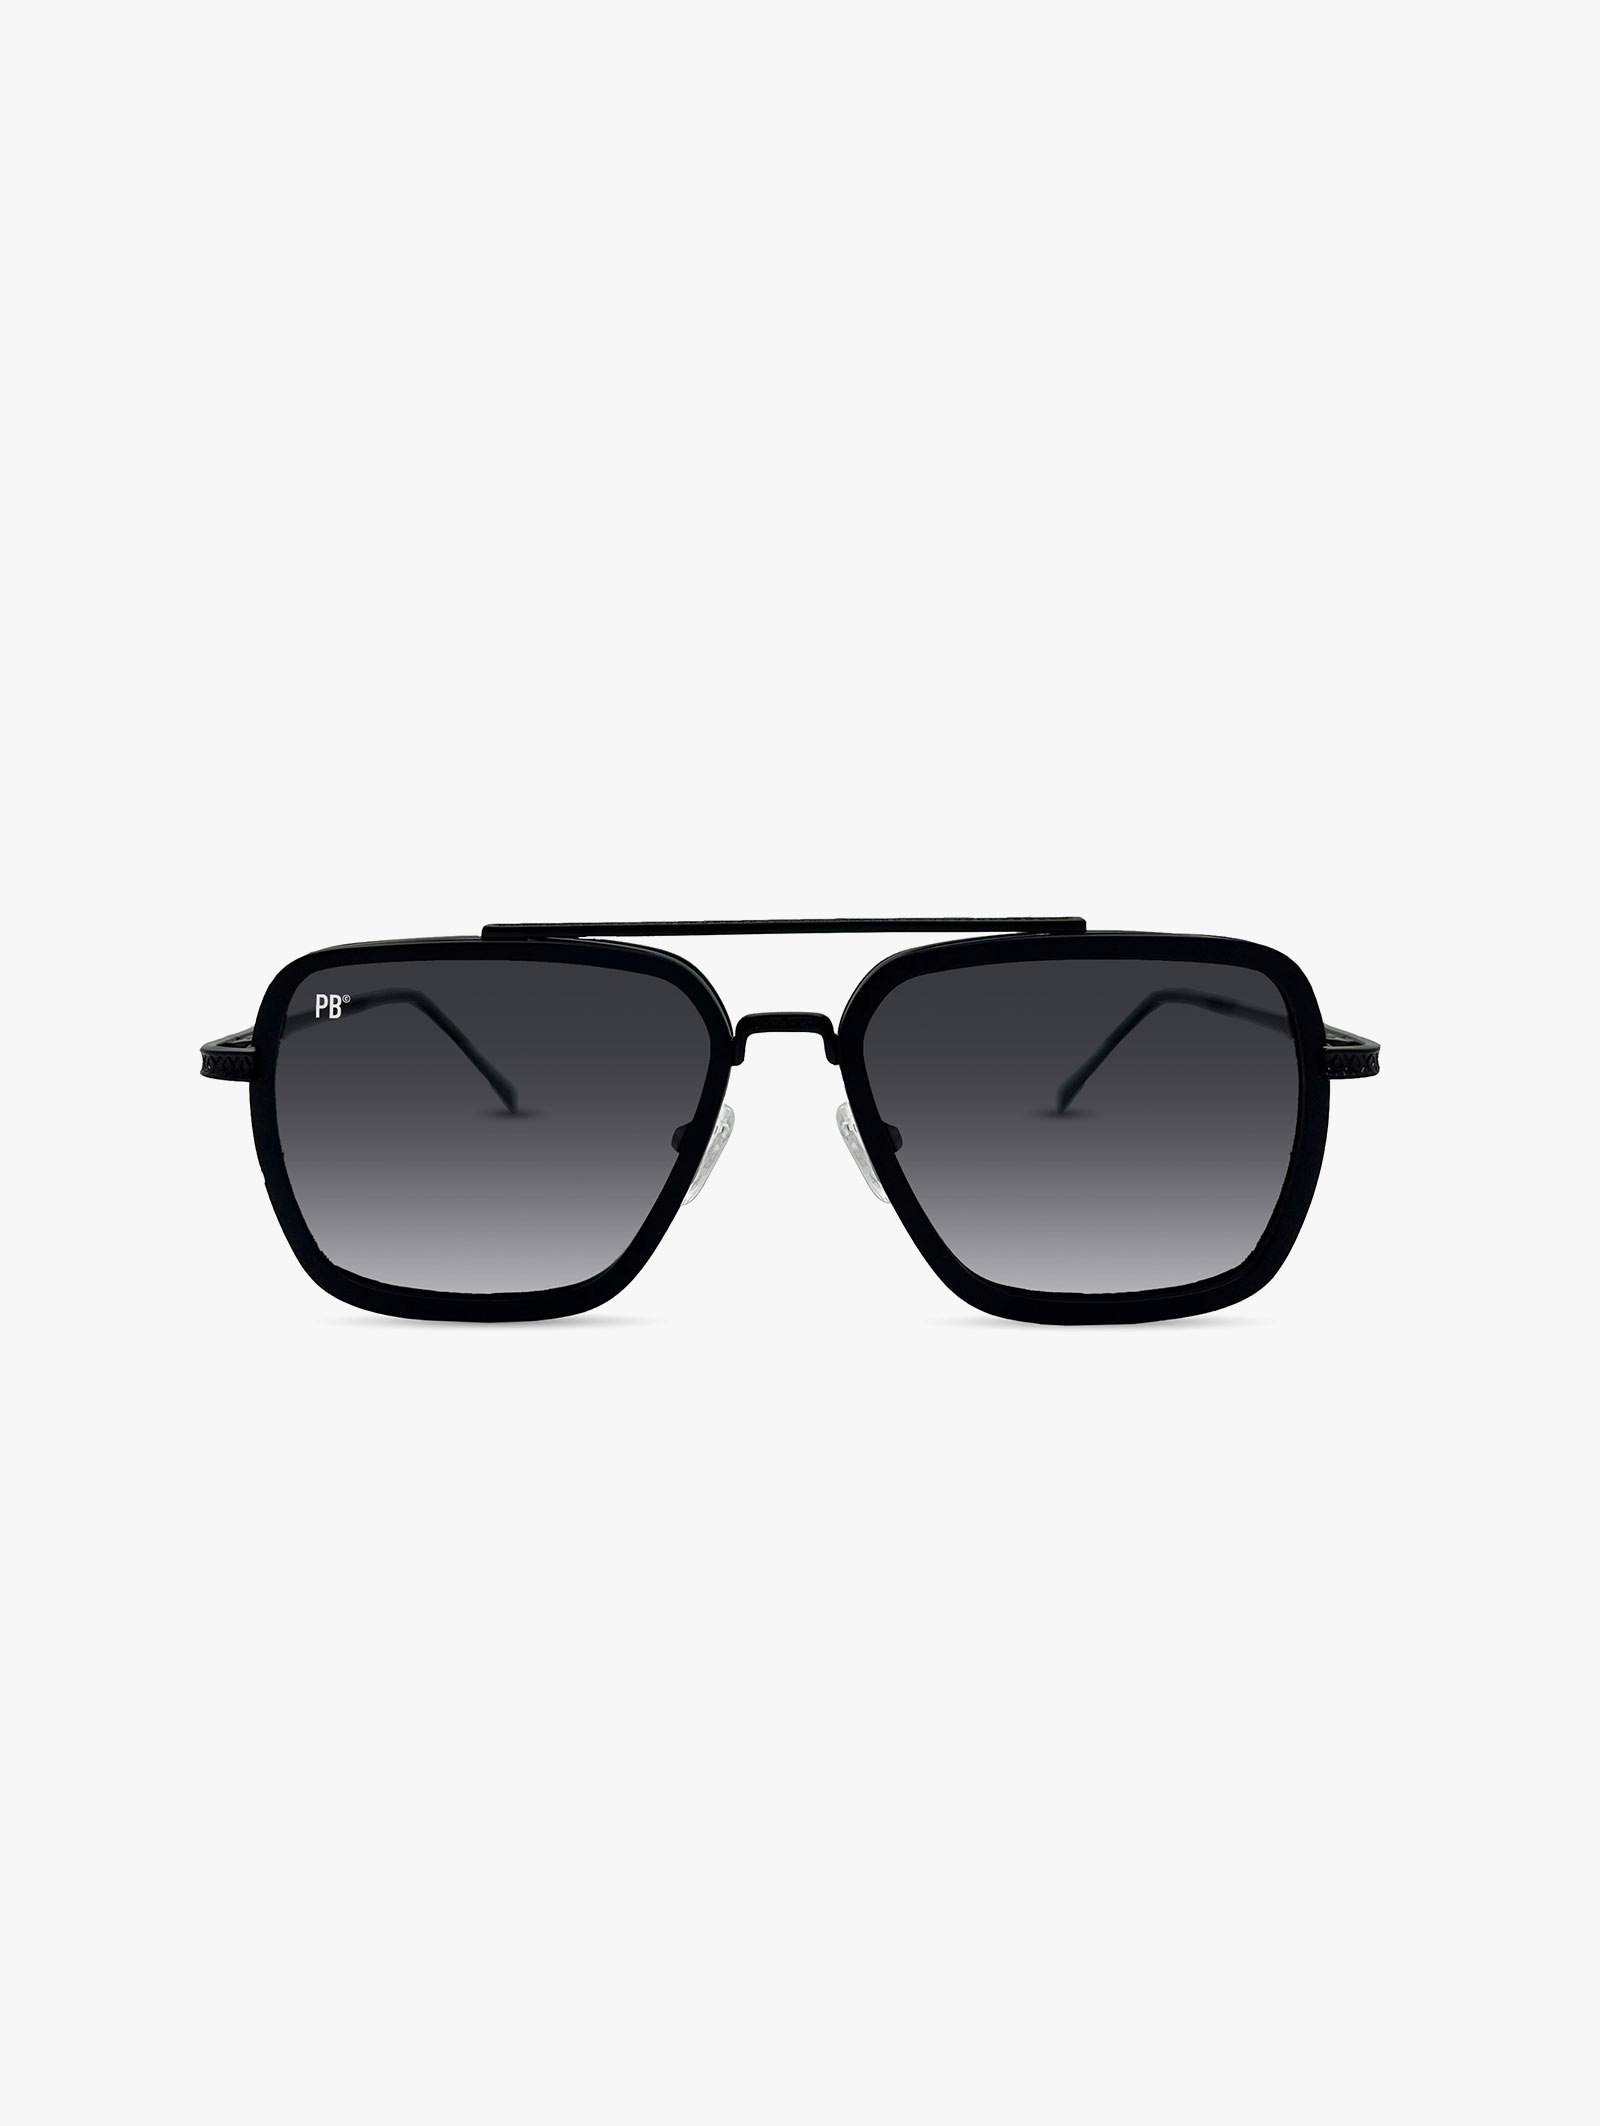 Schwarze Sonnenbrille Herren Damen polarisiert PB Sonnenbrille